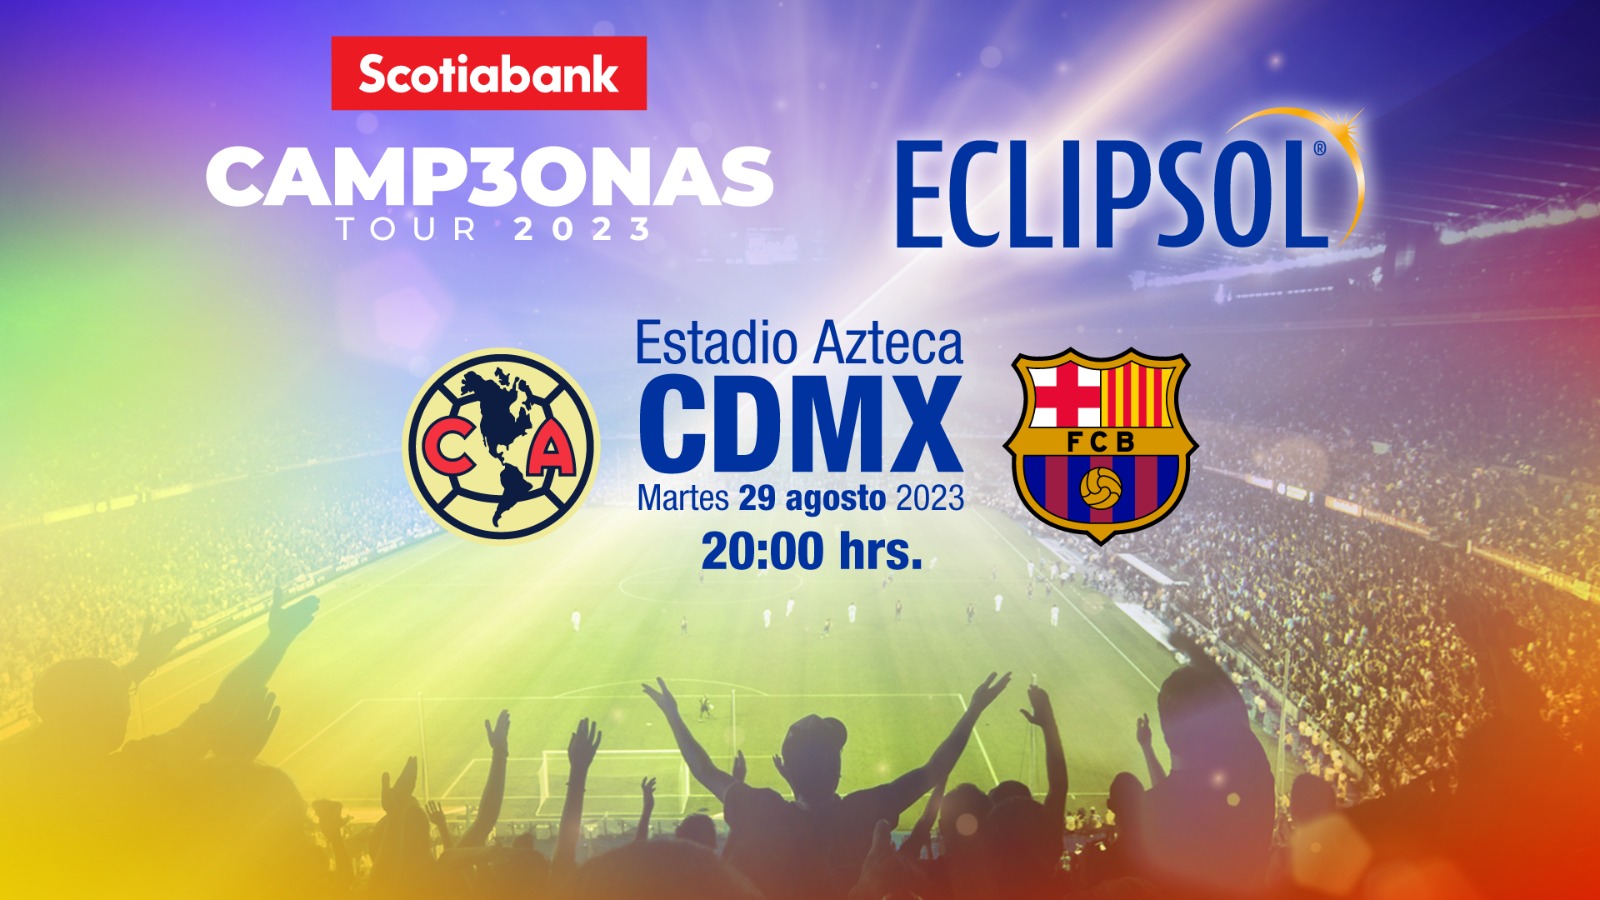 Eclipsol, el nuevo patrocinador del CAMP30NAS Tour 2023 y de la Selección Mexicana de Fútbol